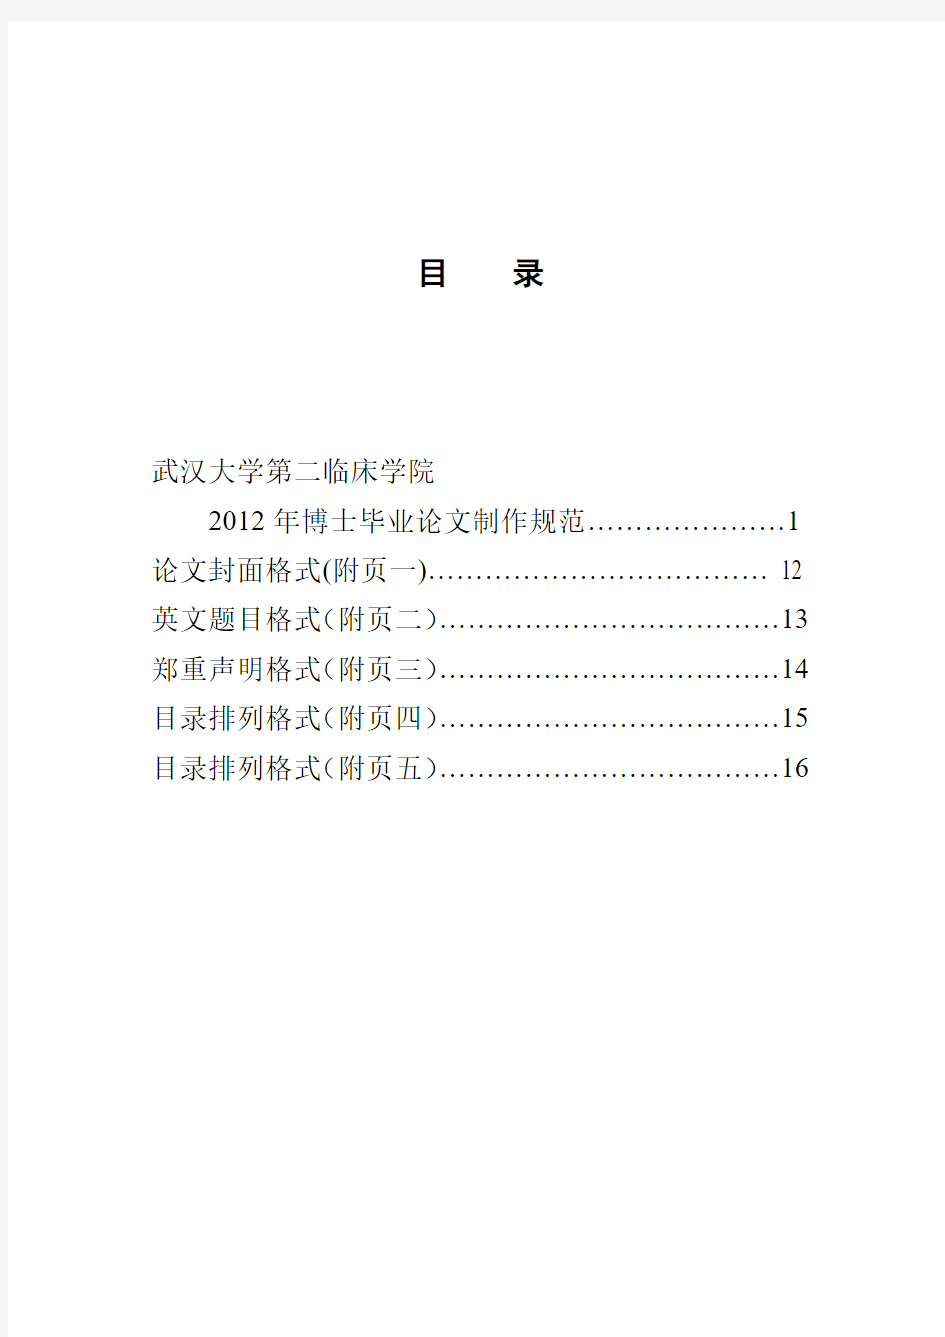 《武汉大学第二临床学院博士毕业论文制作规范》第二版